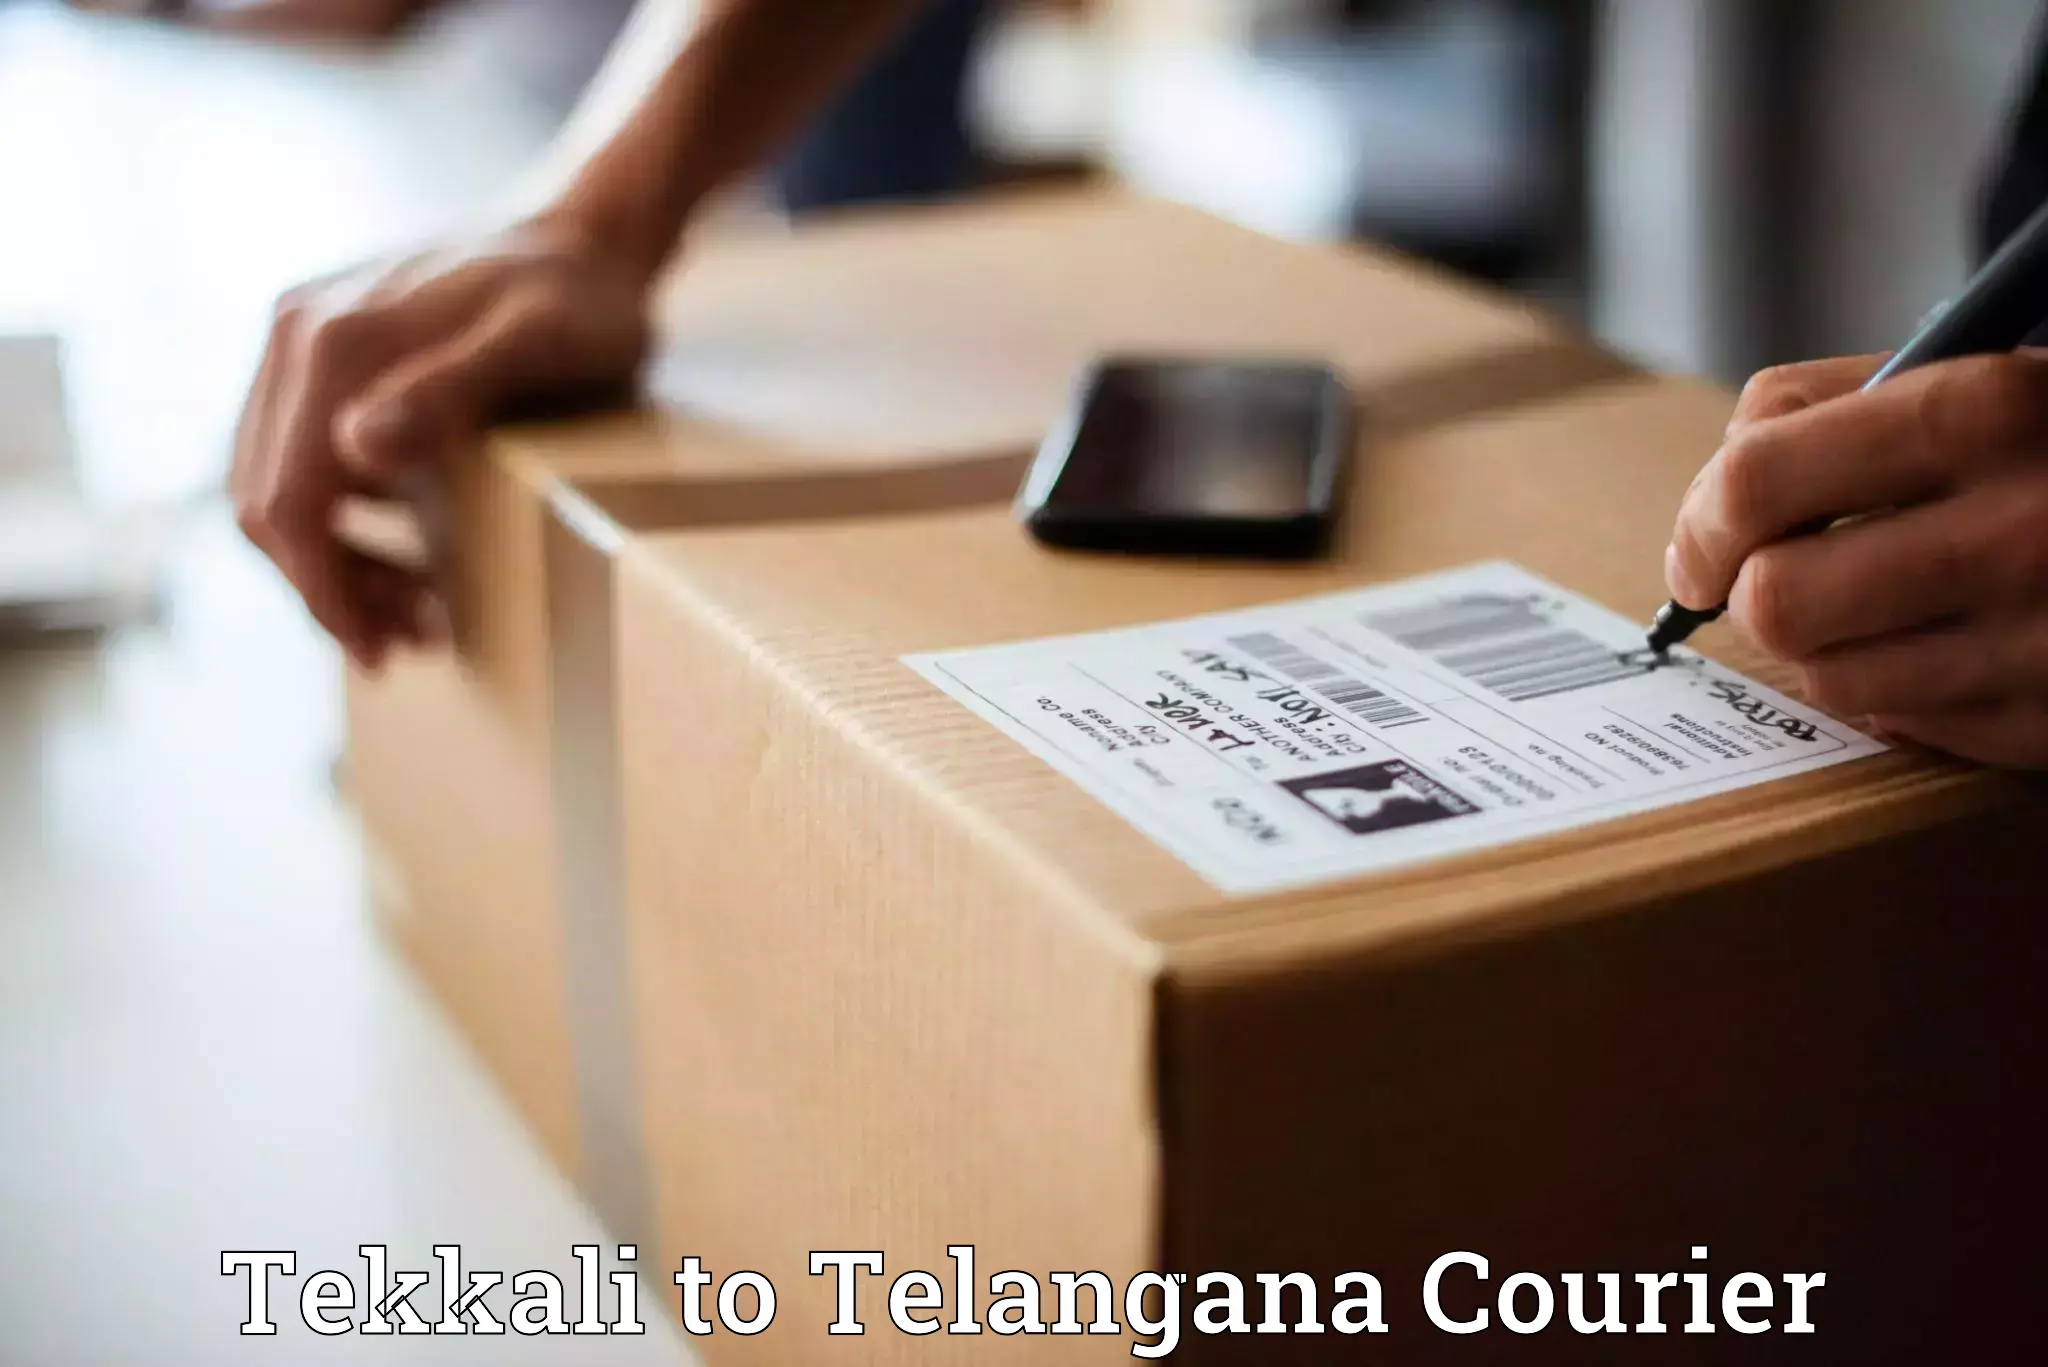 Quick dispatch service Tekkali to Kakeshwaram